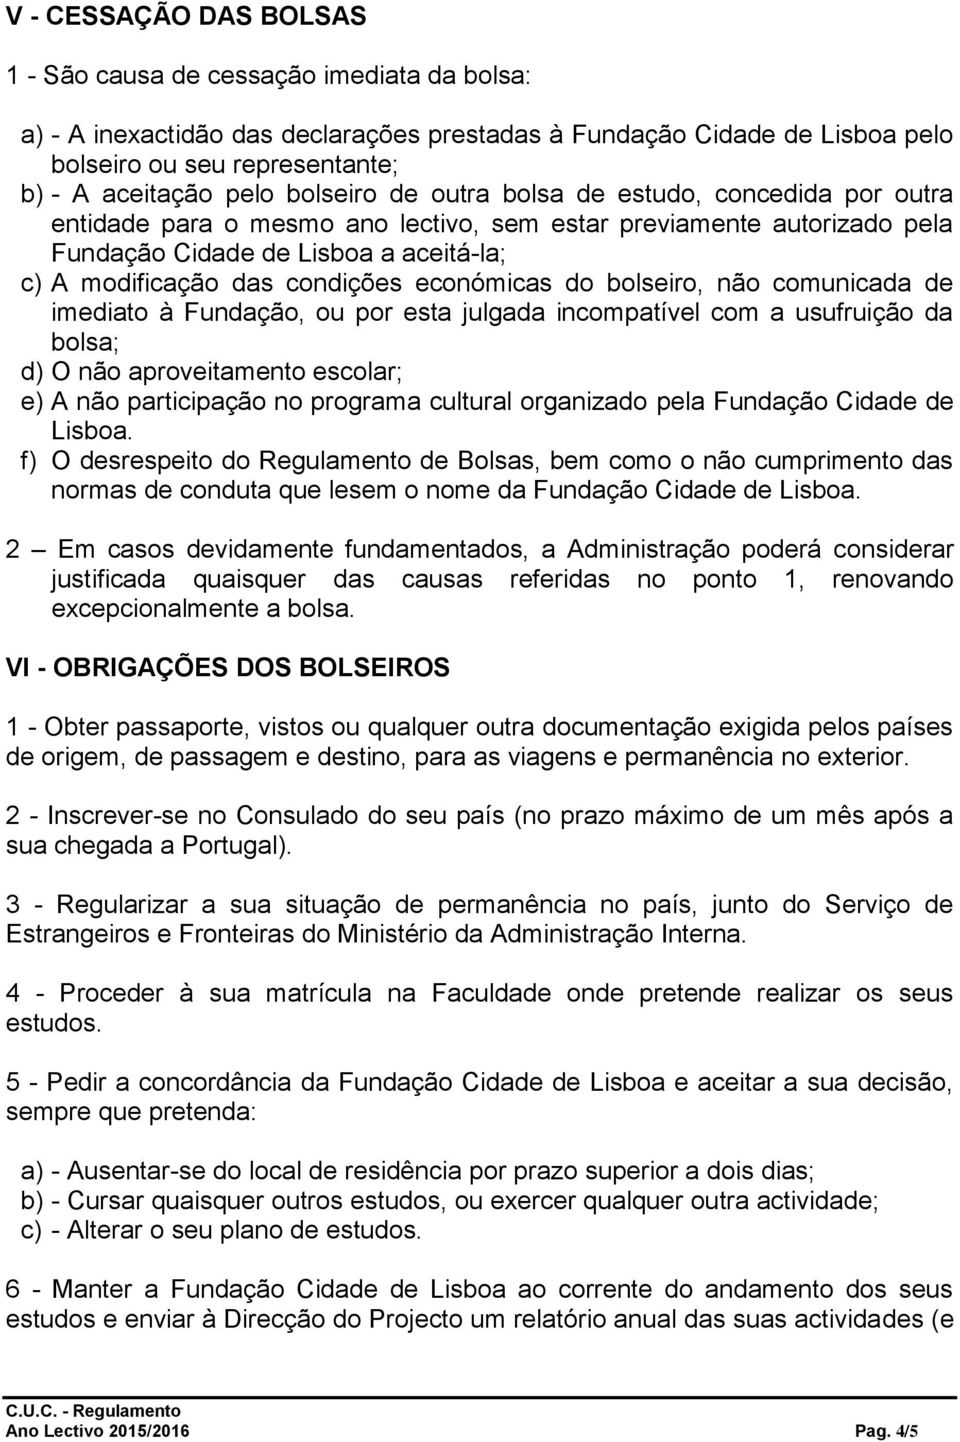 Fundação Cidade Lisboa - PDF Download grátis